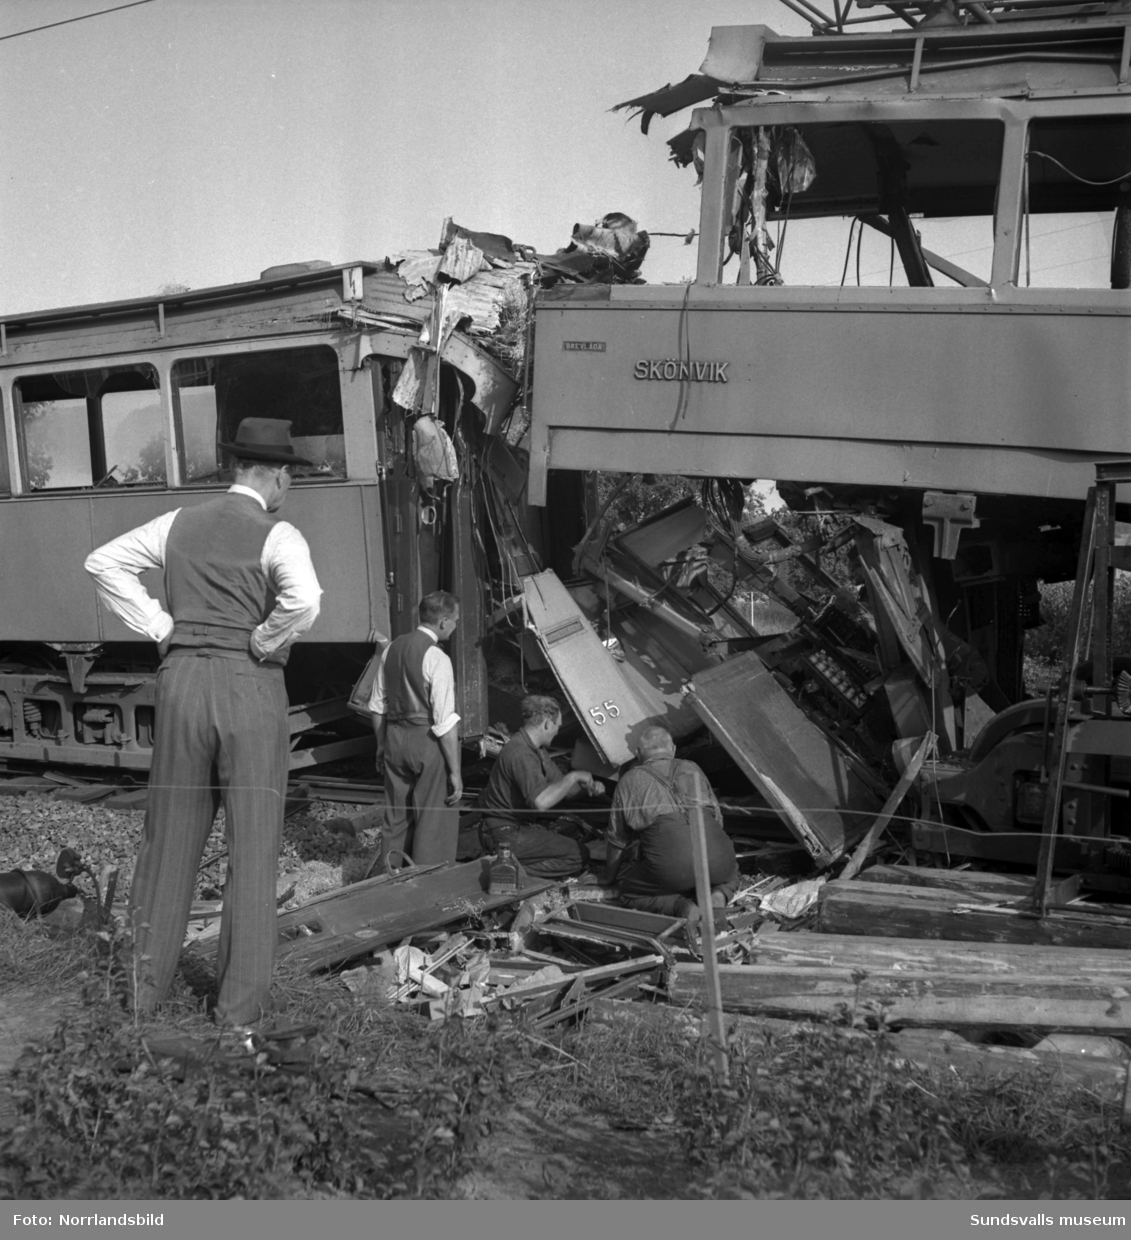 En morgon i slutet av augusti 1949 frontalkrockade två spårvagnar vid Tunadal. Olyckan ska ha orsakats av en missuppfattad order i samband med att en av vagnarna fått problem med strömförsörjningen. 22 personer fördes till sjukhus, varav två med allvarliga skador.